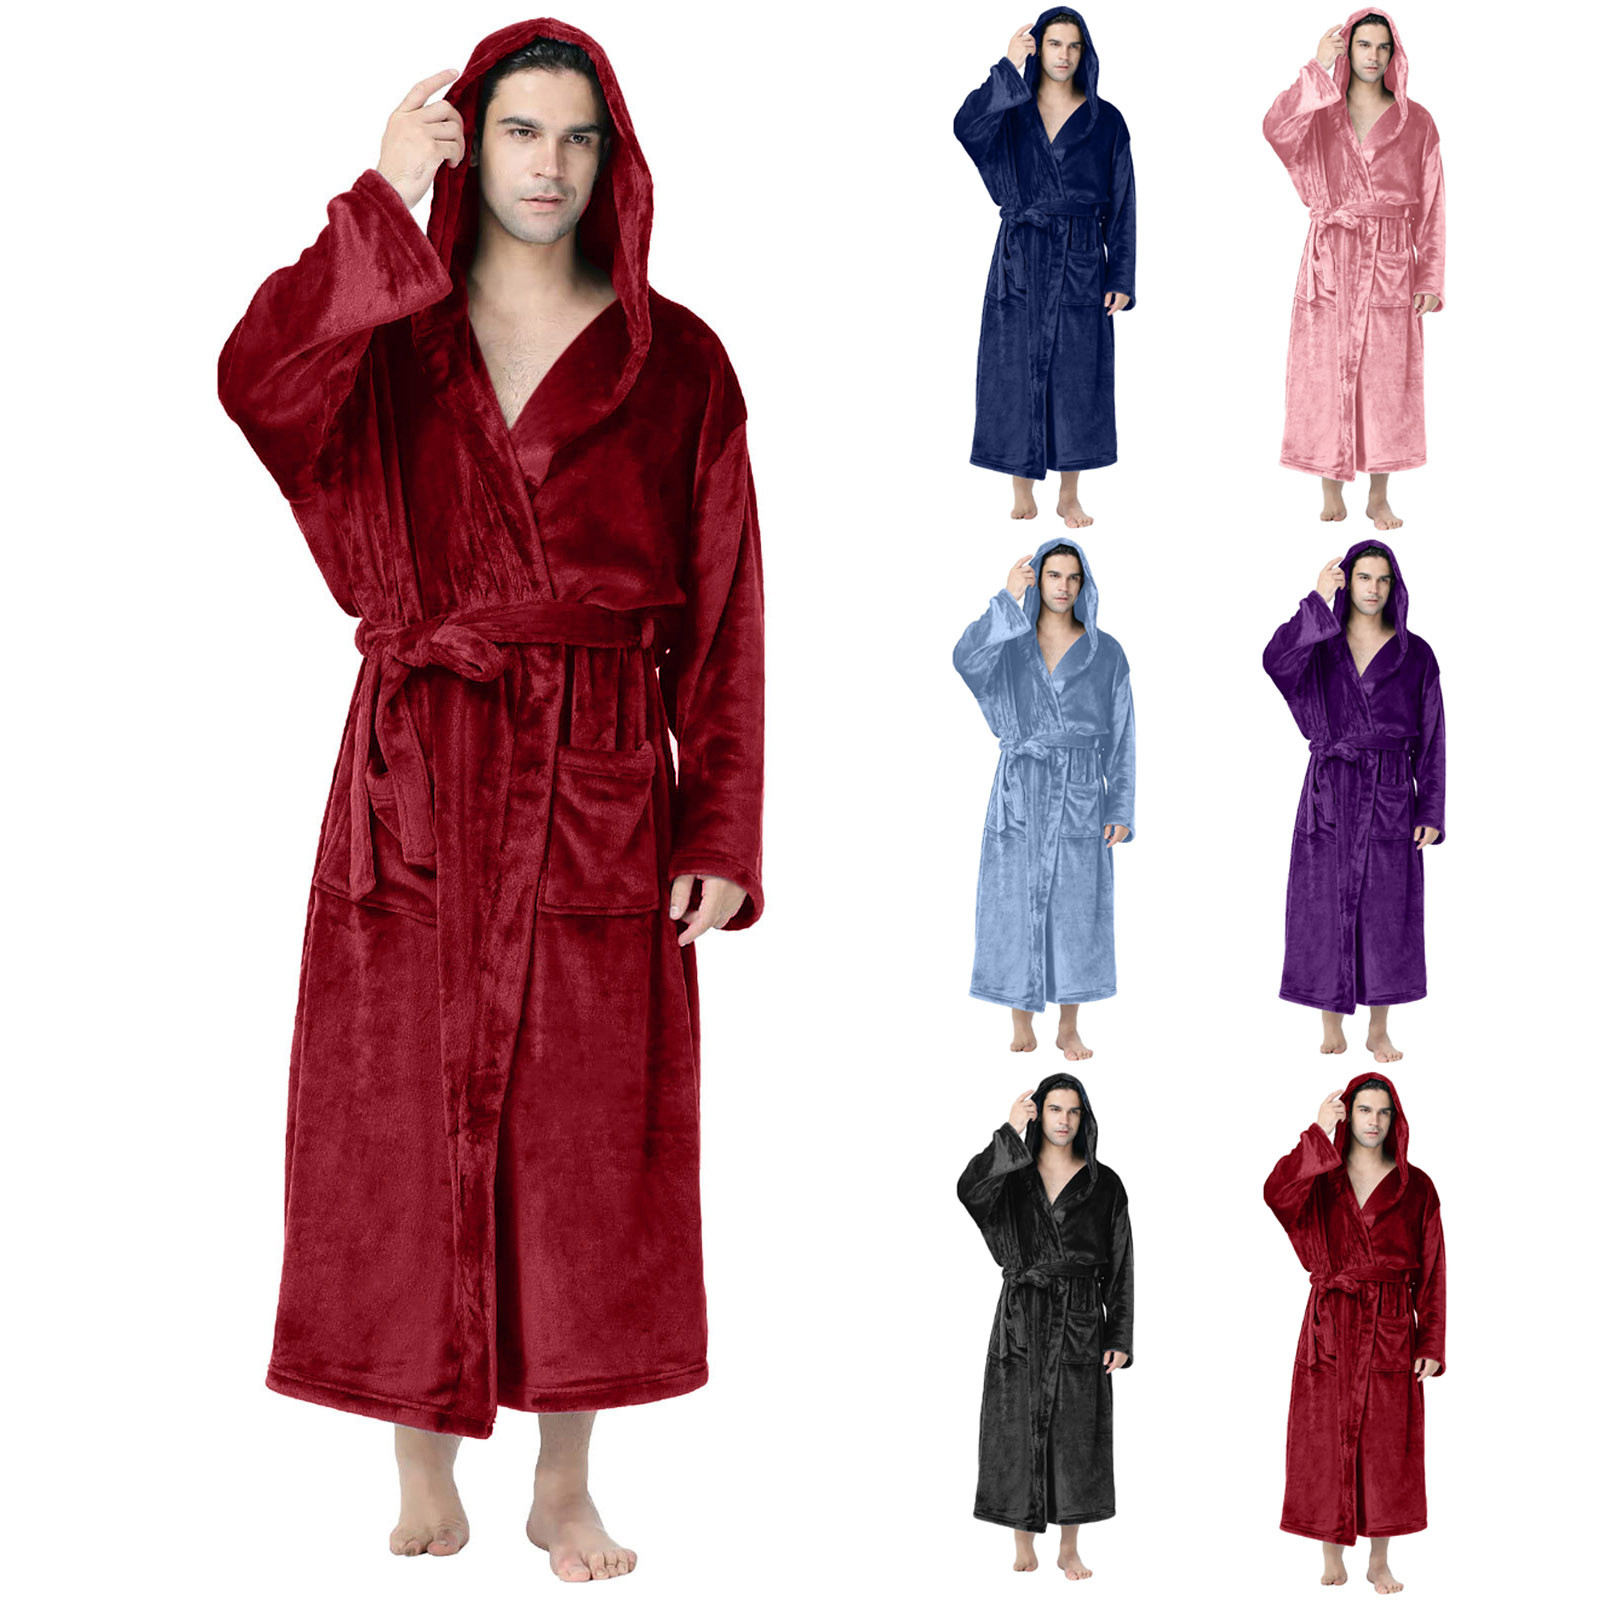 Utoimkio Men's Fleece Hooded Robe Plus Size Plush Warm Bathrobe ...